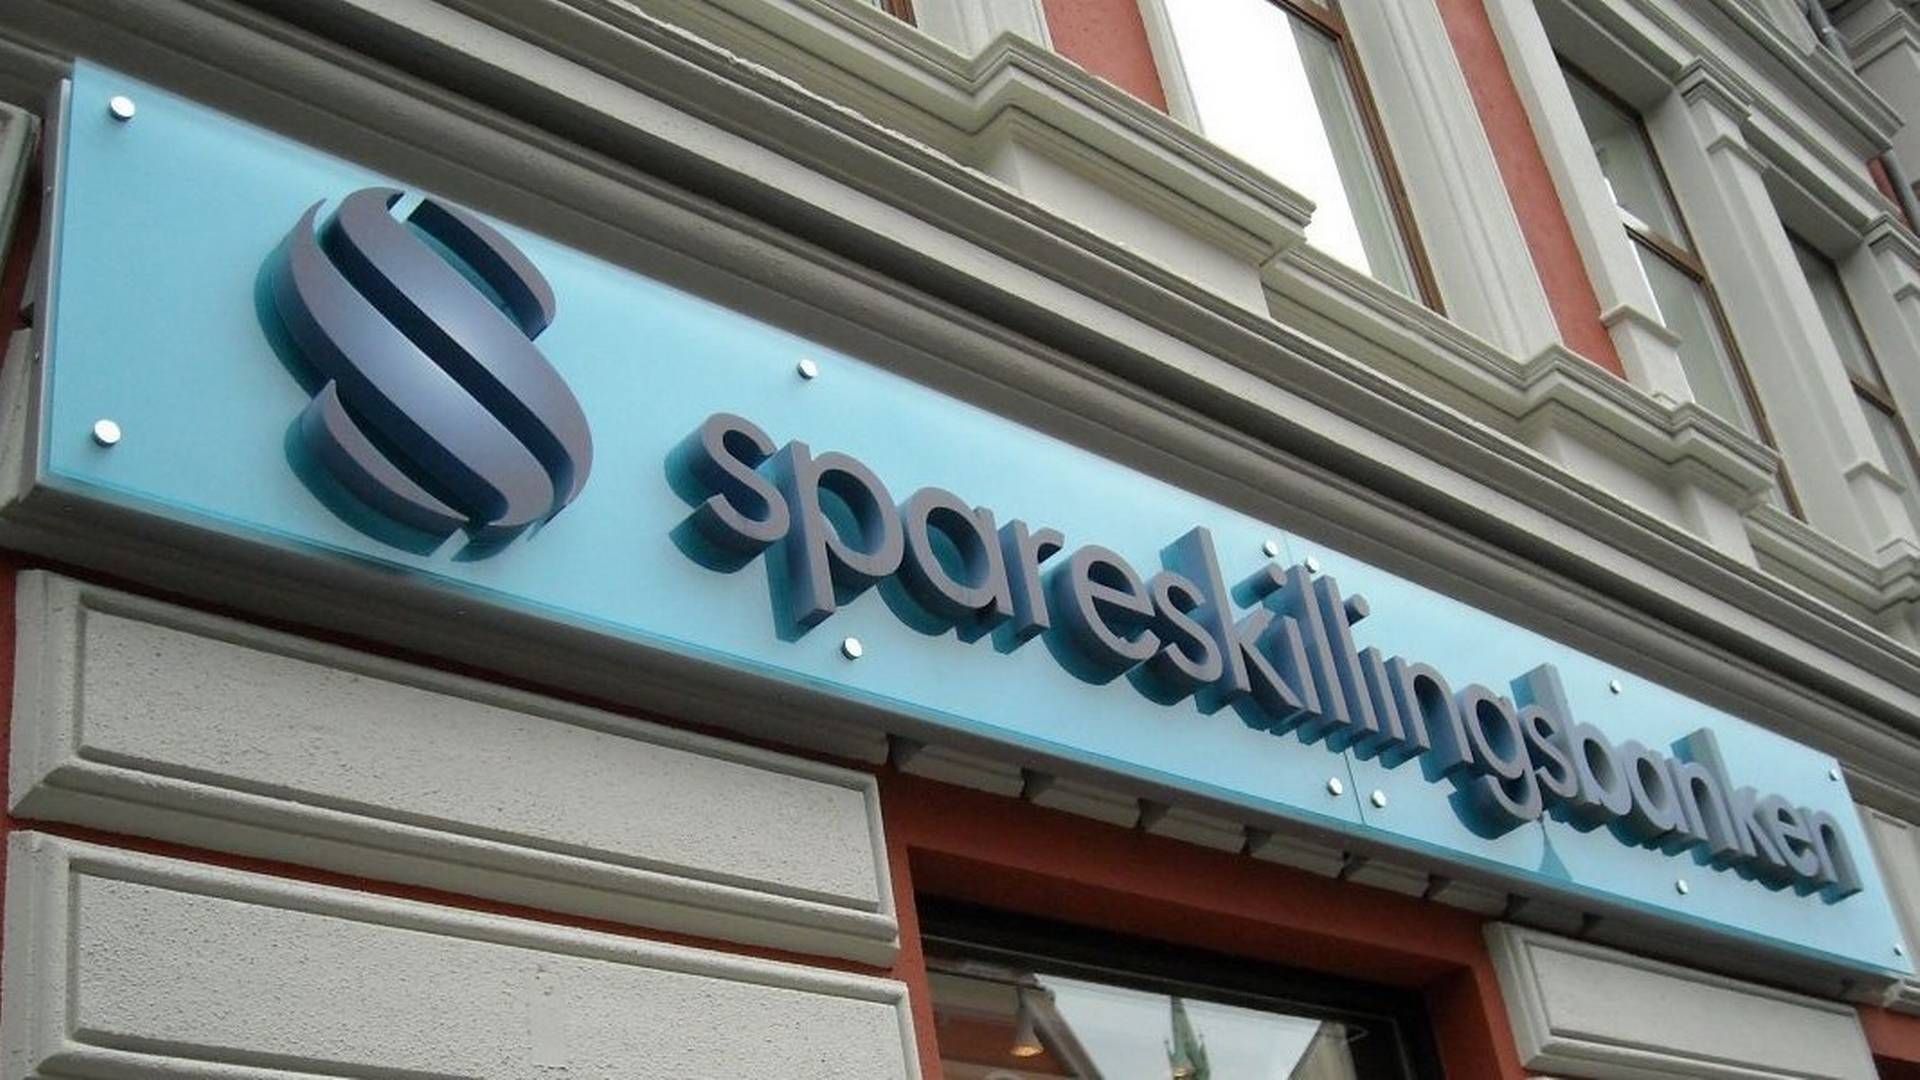 Spareskillingsbanken i Kristiansand. | Foto: Spareskillingsbanken